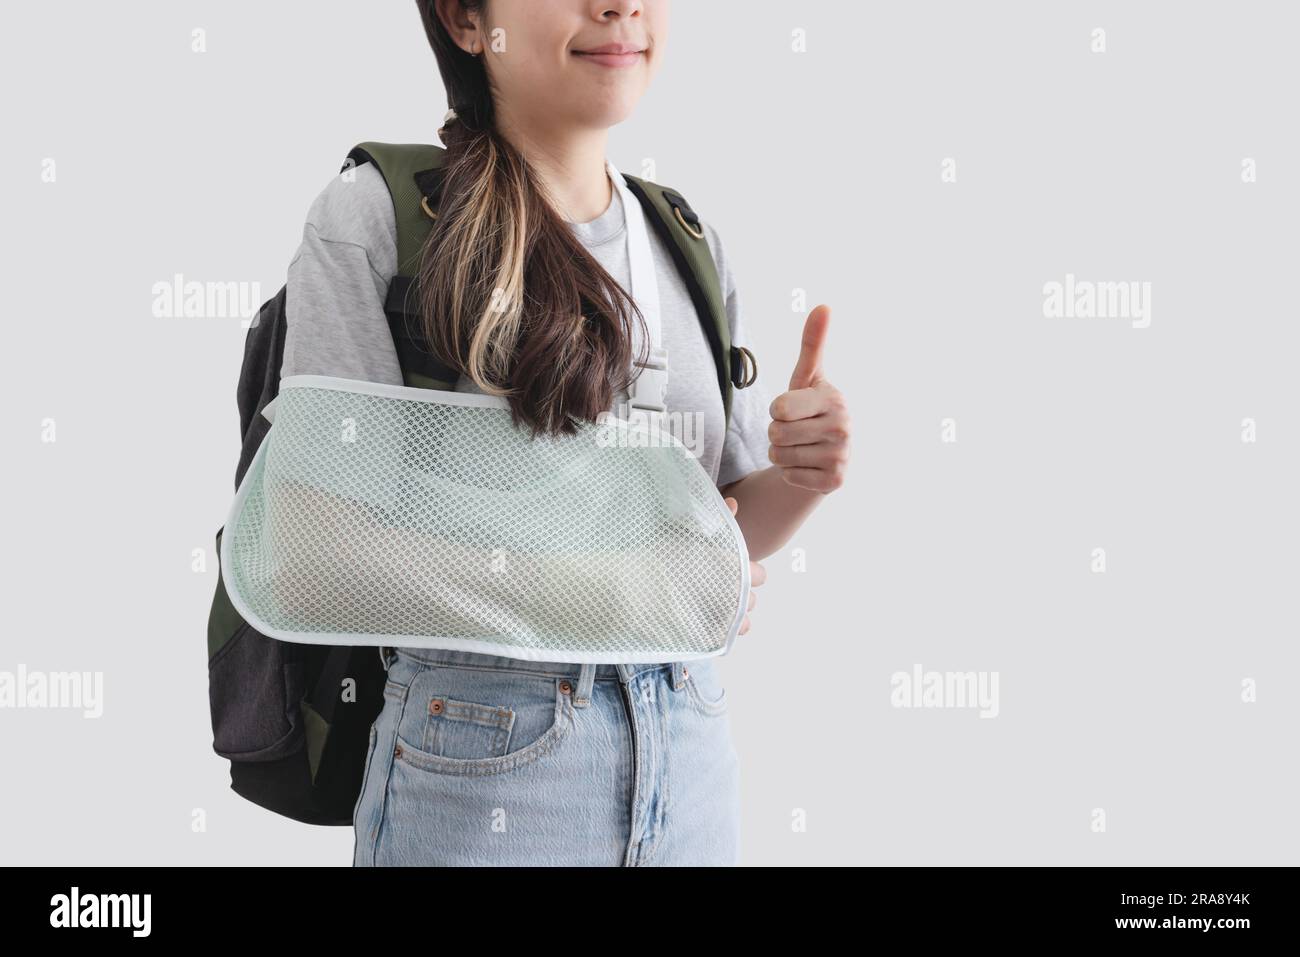 Reiseversicherungskonzepte. Junge Frau mit einer verletzten Hand, die eine Schiene trägt, einen gebrochenen Arm trägt, einen Rucksack trägt, Daumen nach oben zeigt, lächelt Stockfoto